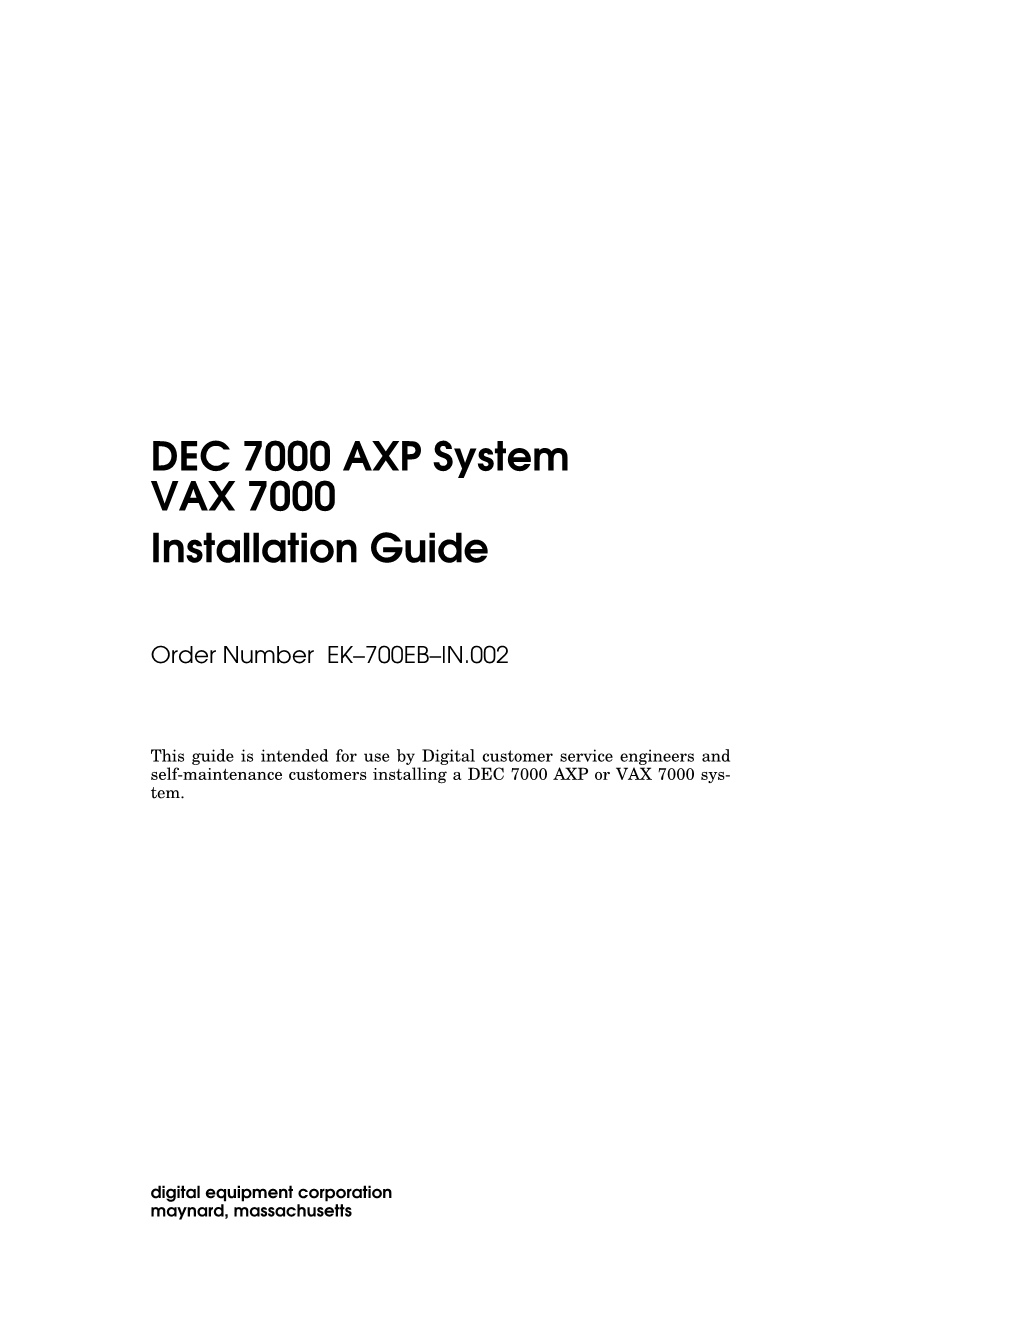 DEC 7000 AXP System VAX 7000 Installation Guide